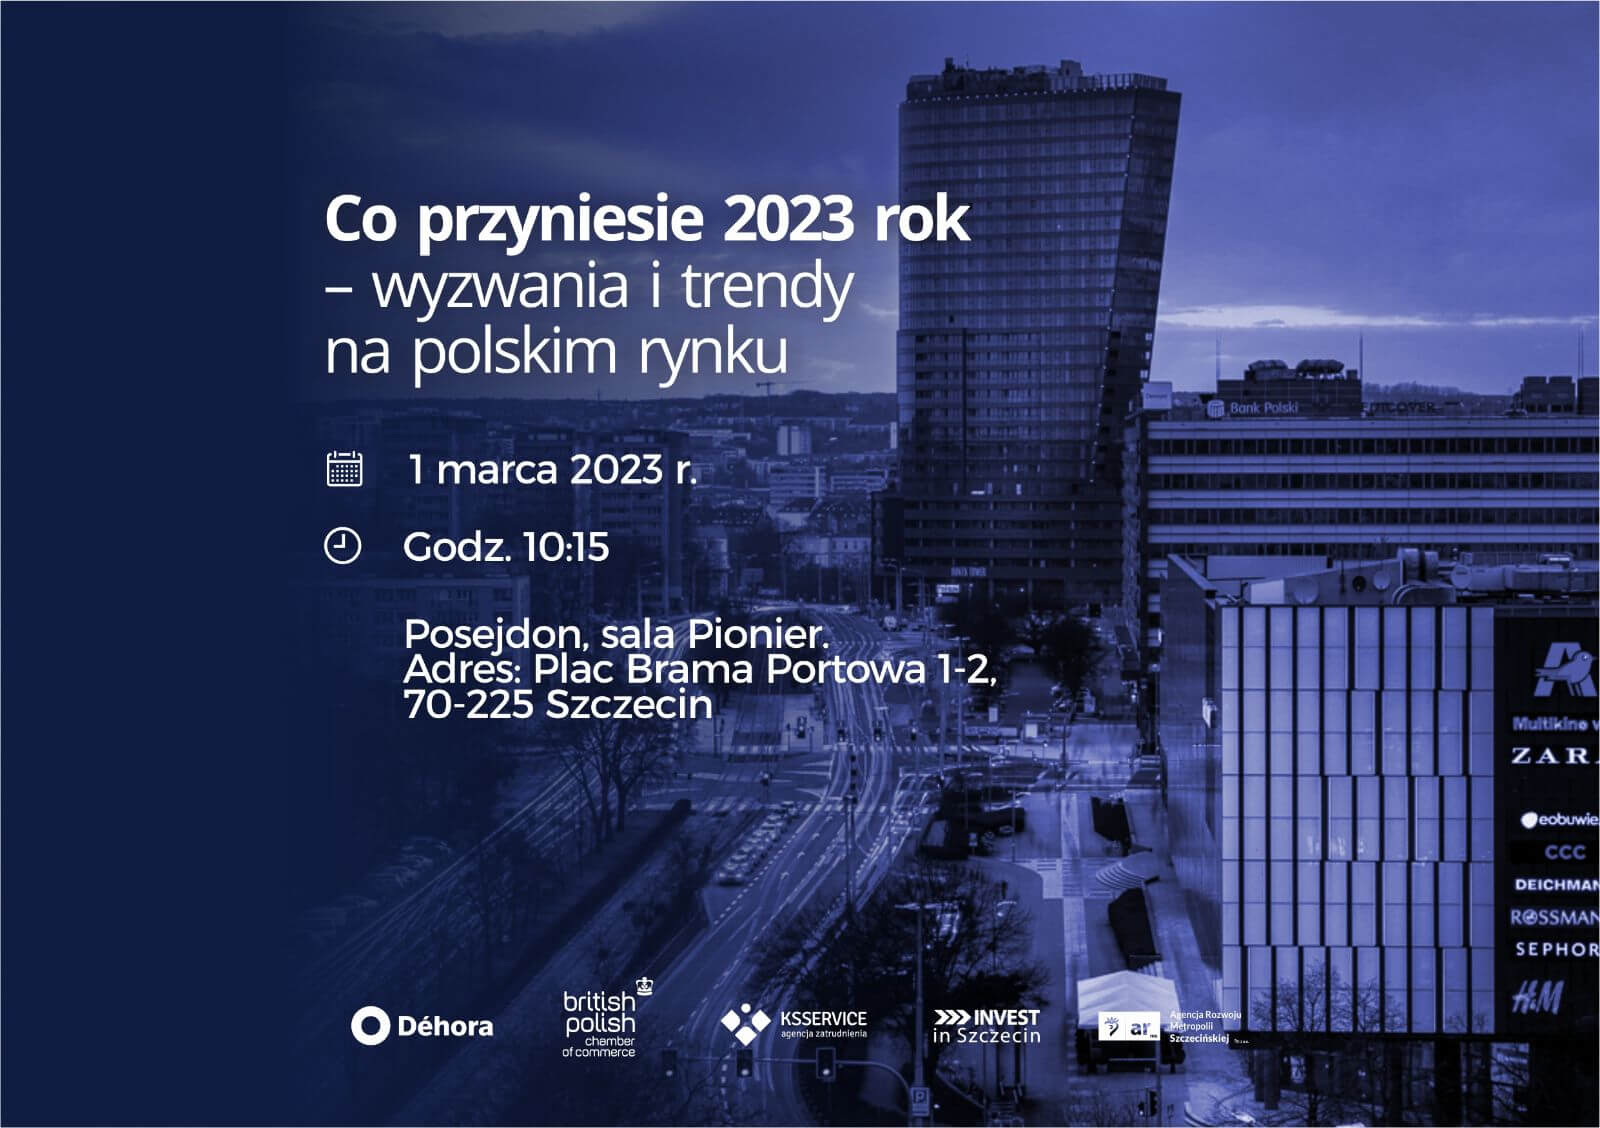 Co przyniesie 2023 rok – wyzwania i trendy na polskim rynku